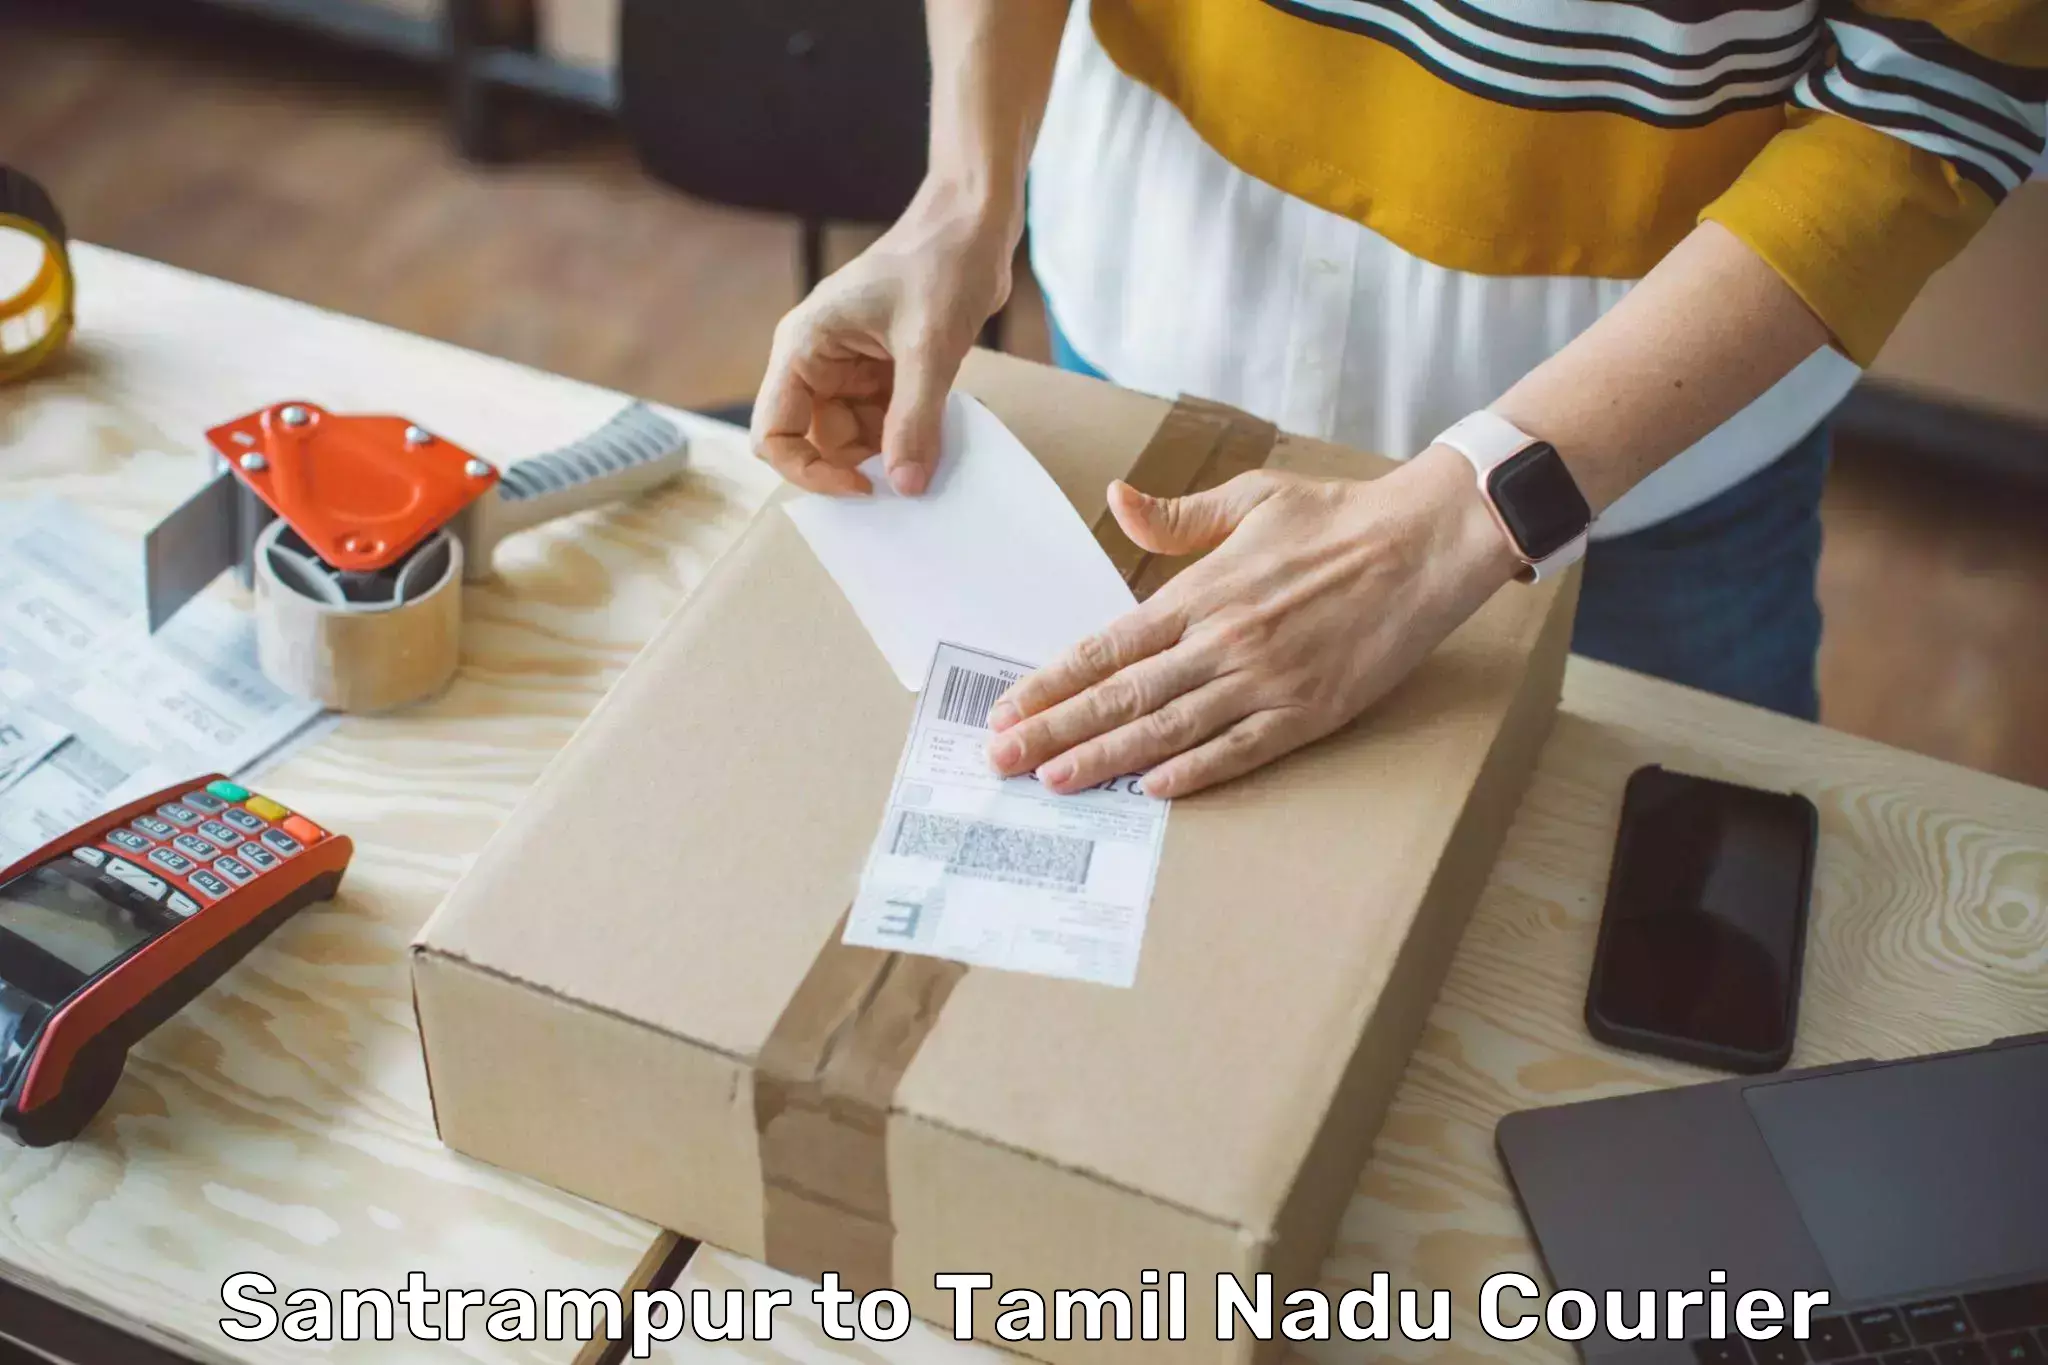 Small business couriers Santrampur to Thiruvadanai